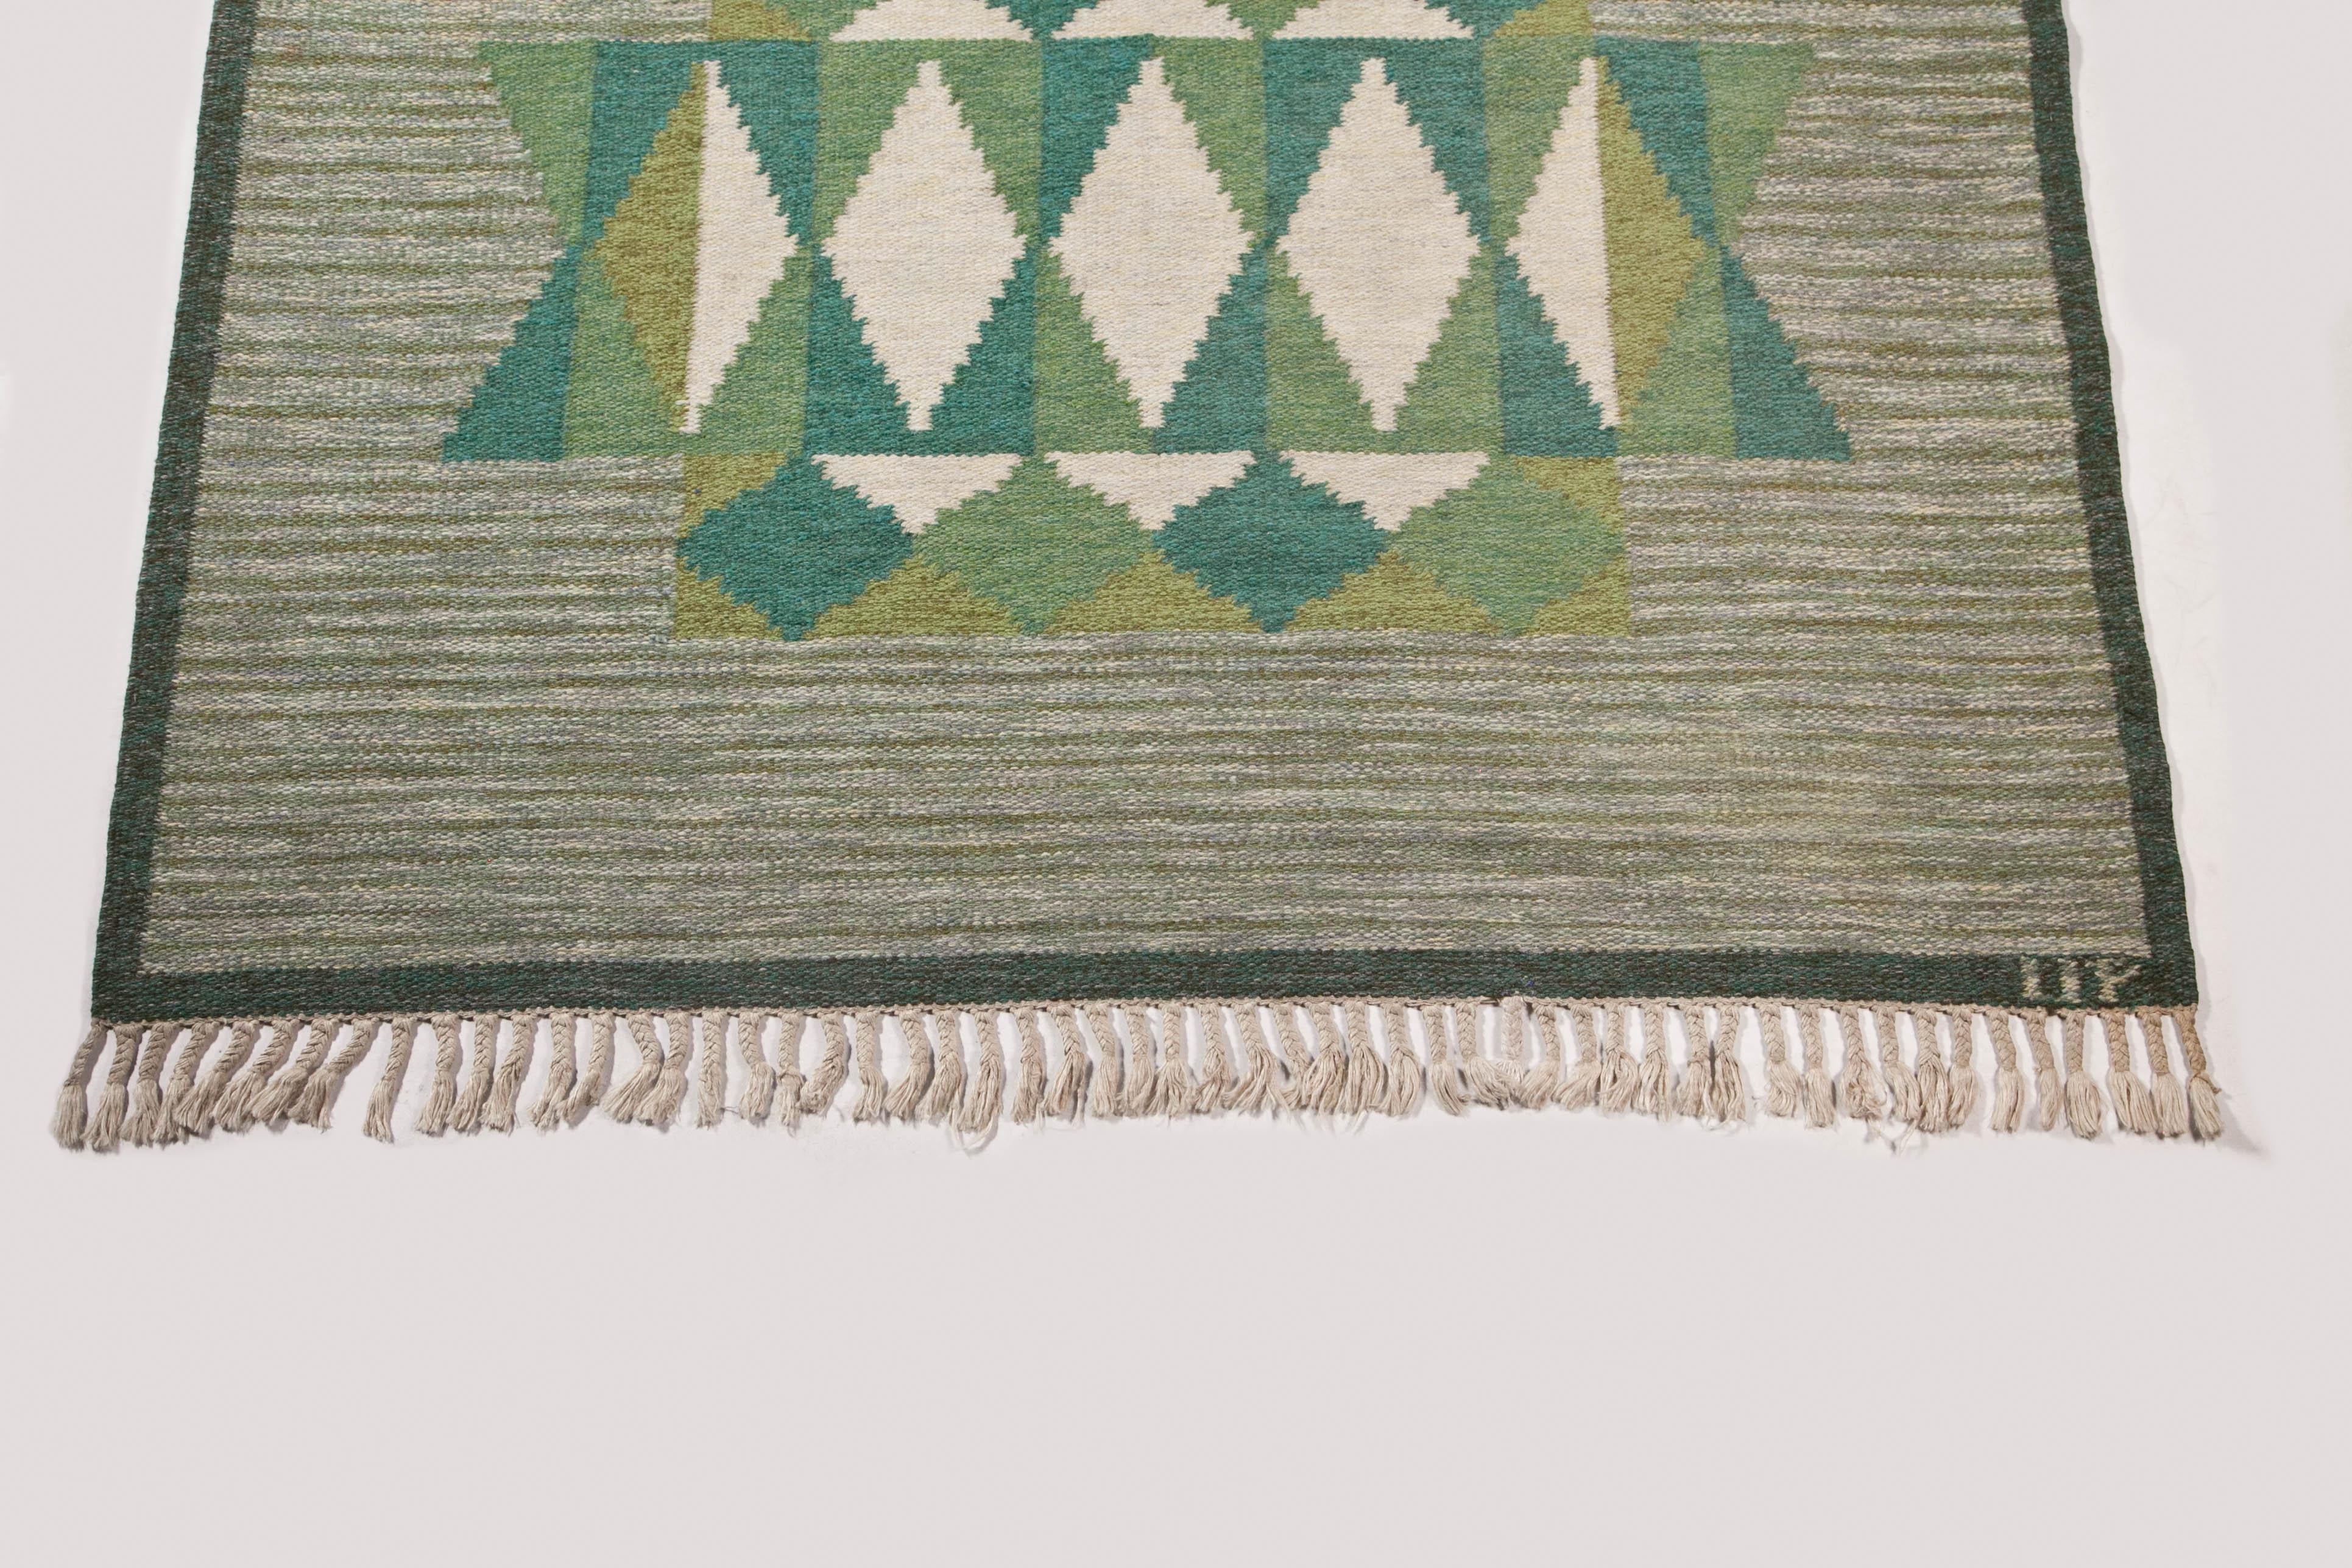 Ulla Parkdal - Swedish flat weave rug, Sweden 1960's - 94.5